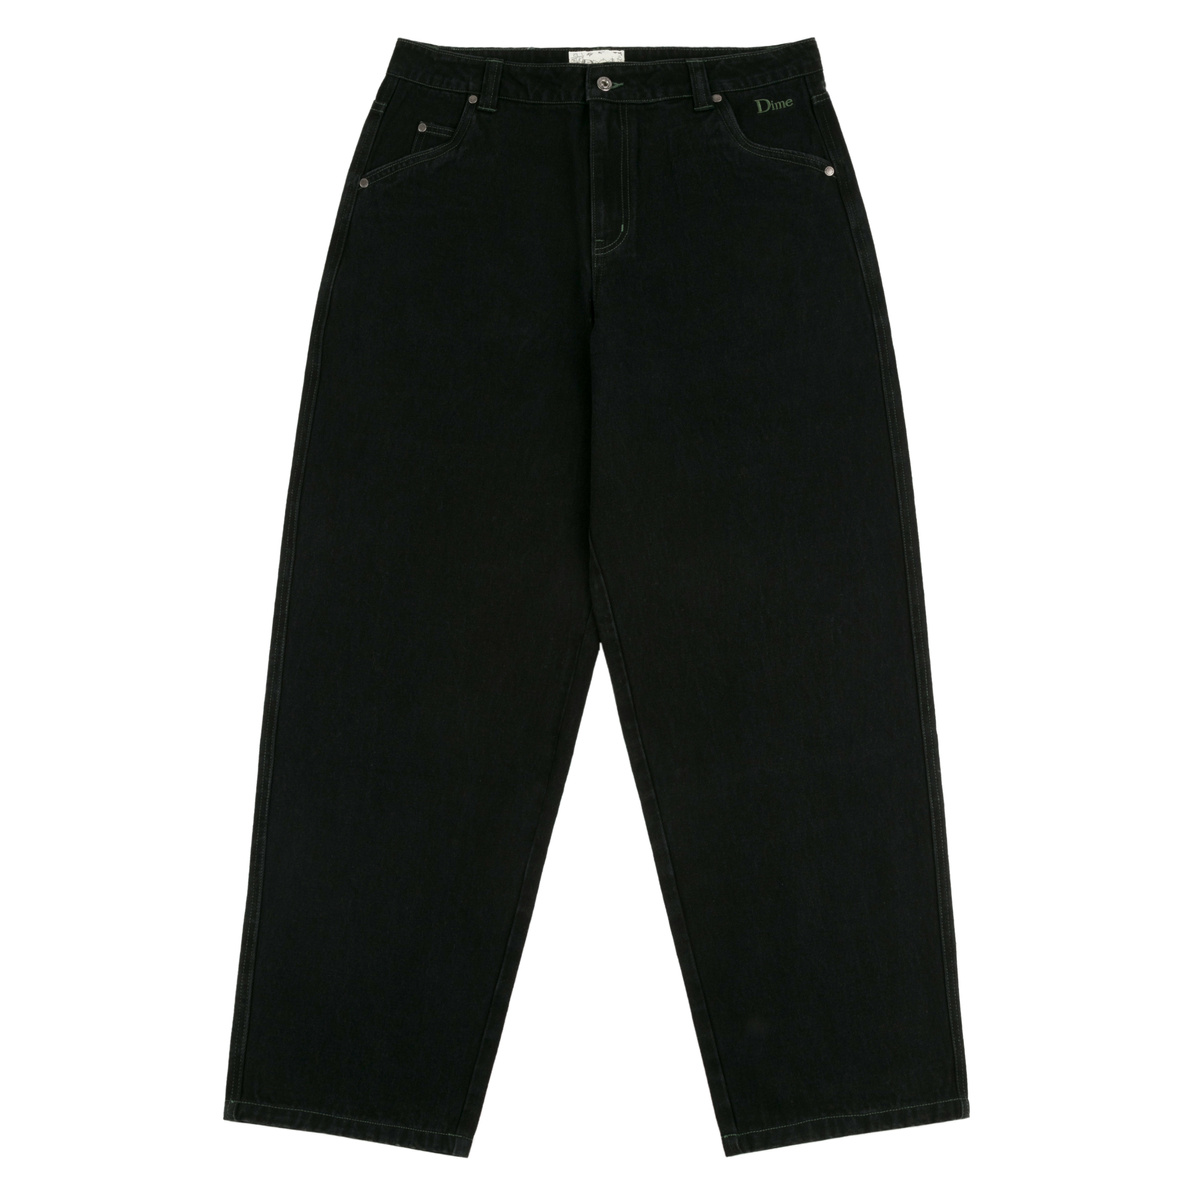 Dime Classic Baggy Denim Pants Black | Clothes \ Pants News Brands ...